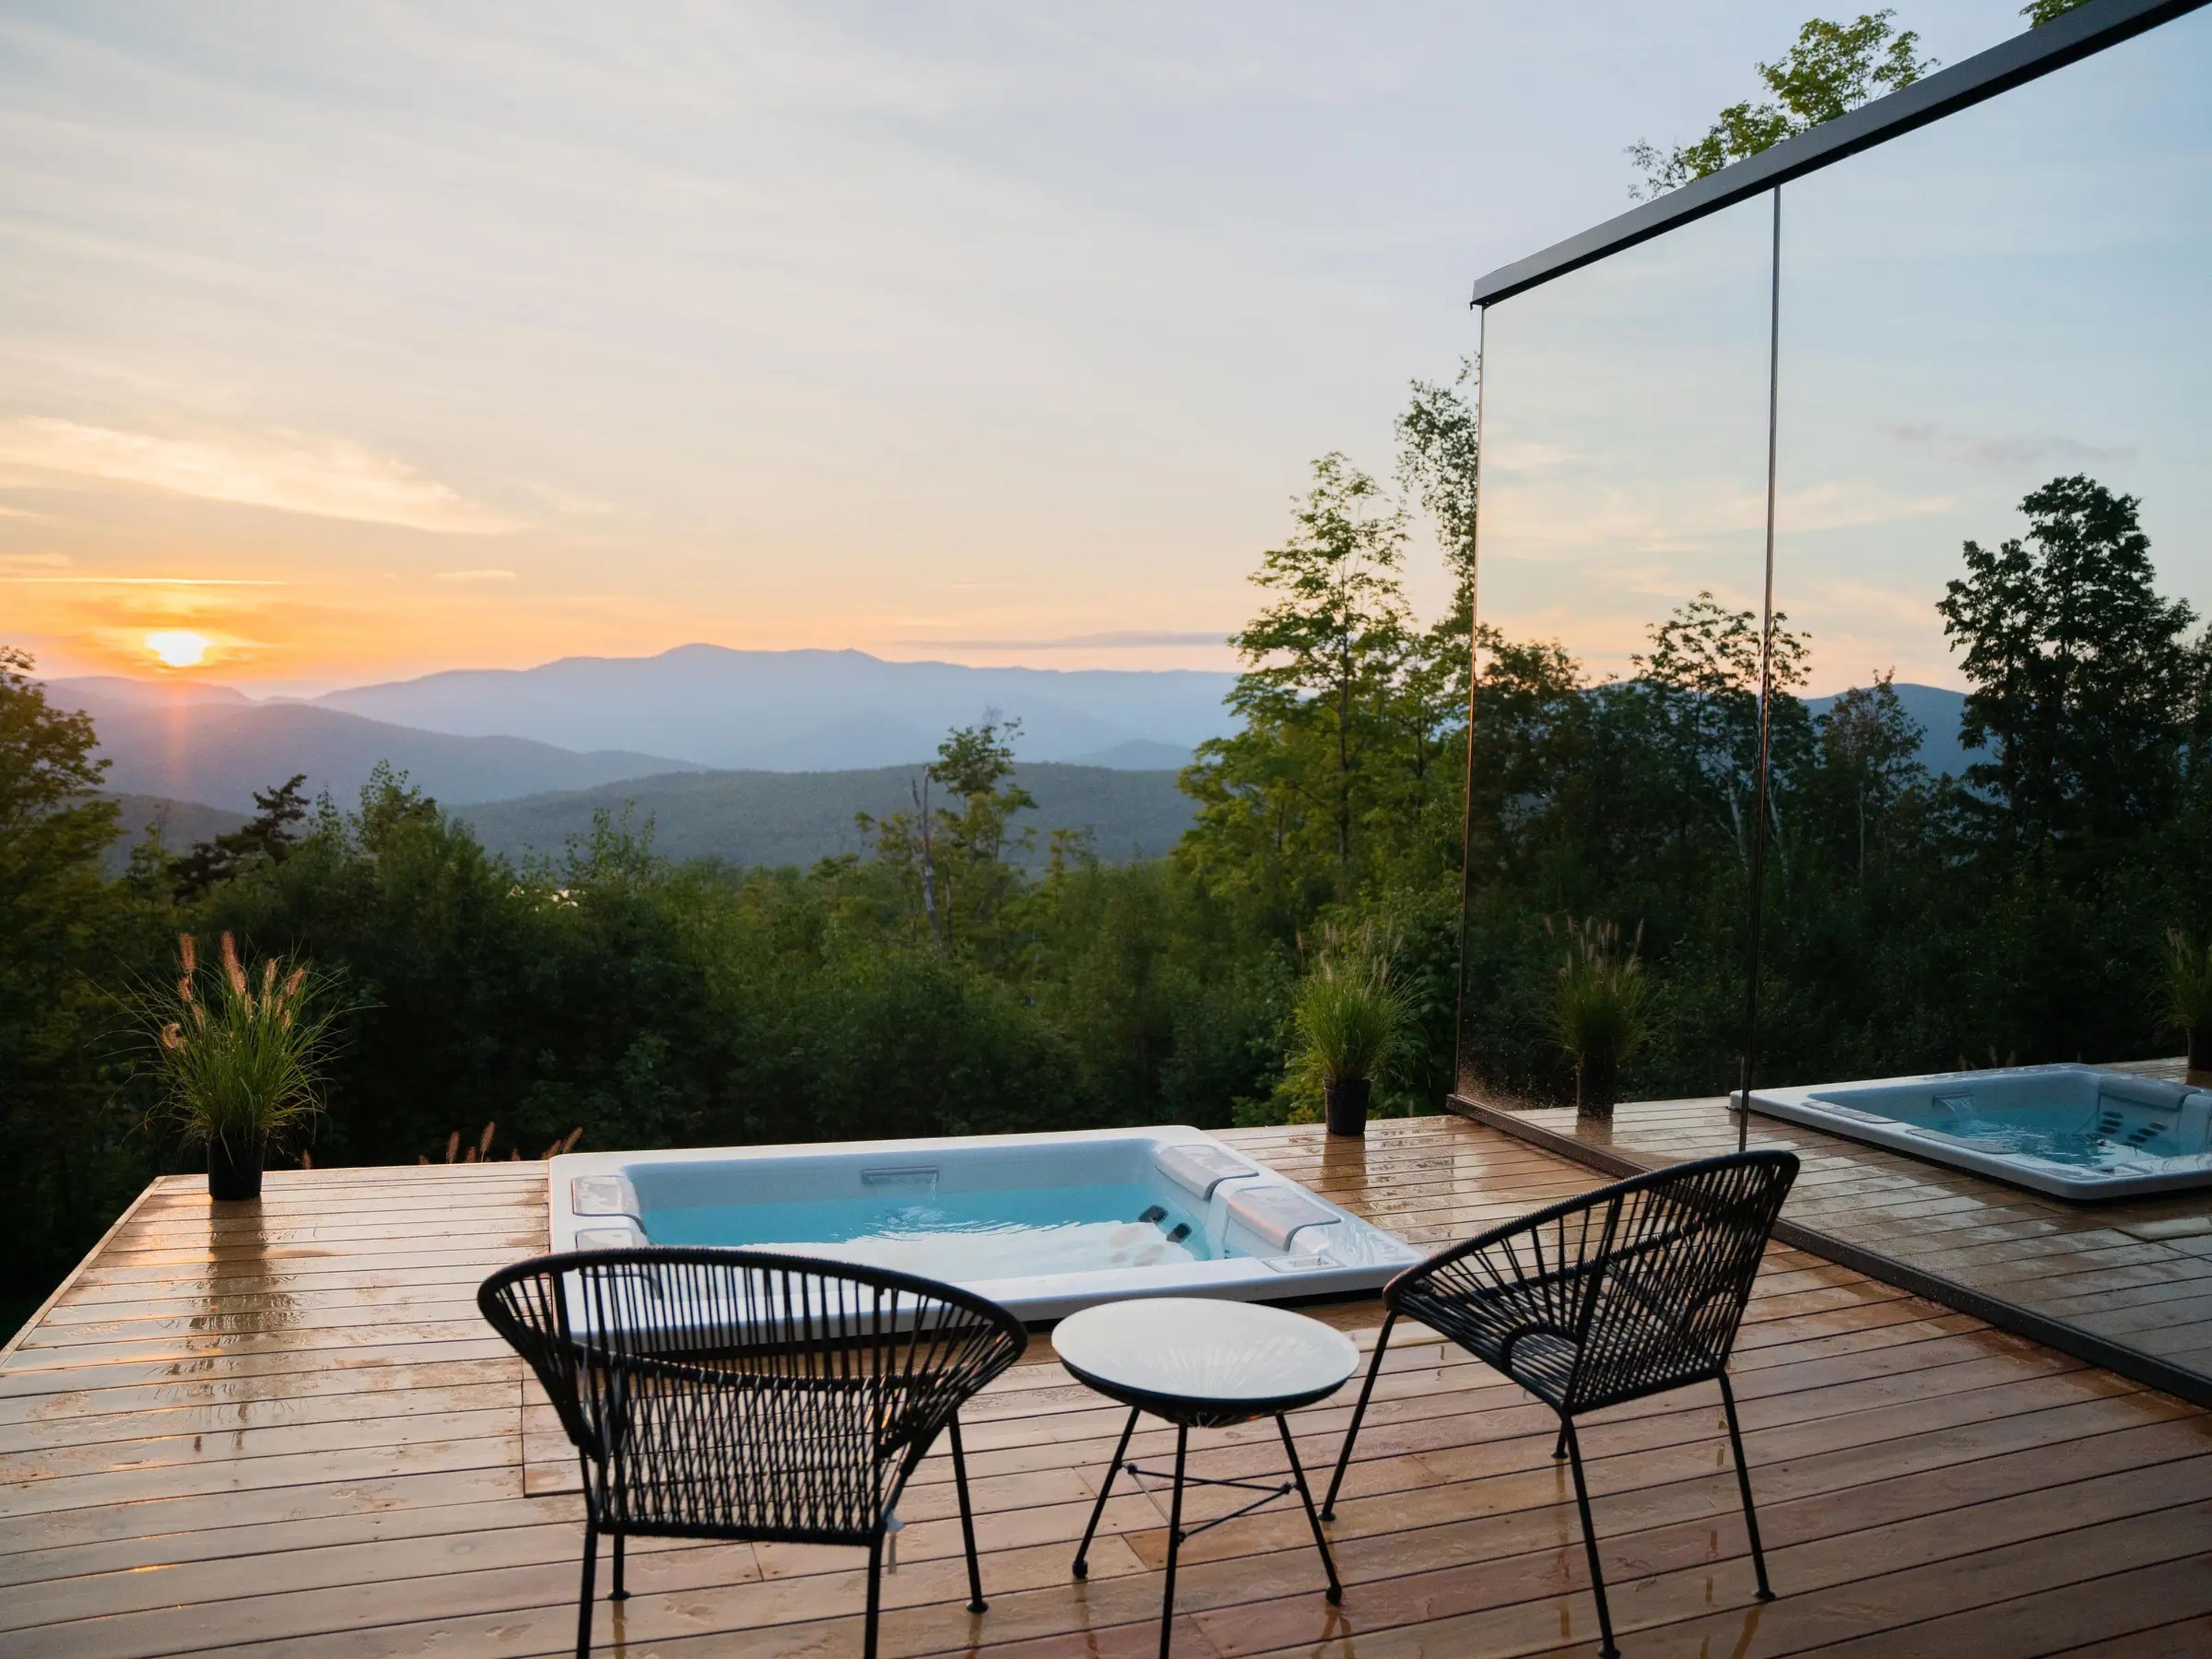 La lista de las nuevas propiedades más deseadas de Airbnb incluye esta casita de cristal con jacuzzi en Vermont.